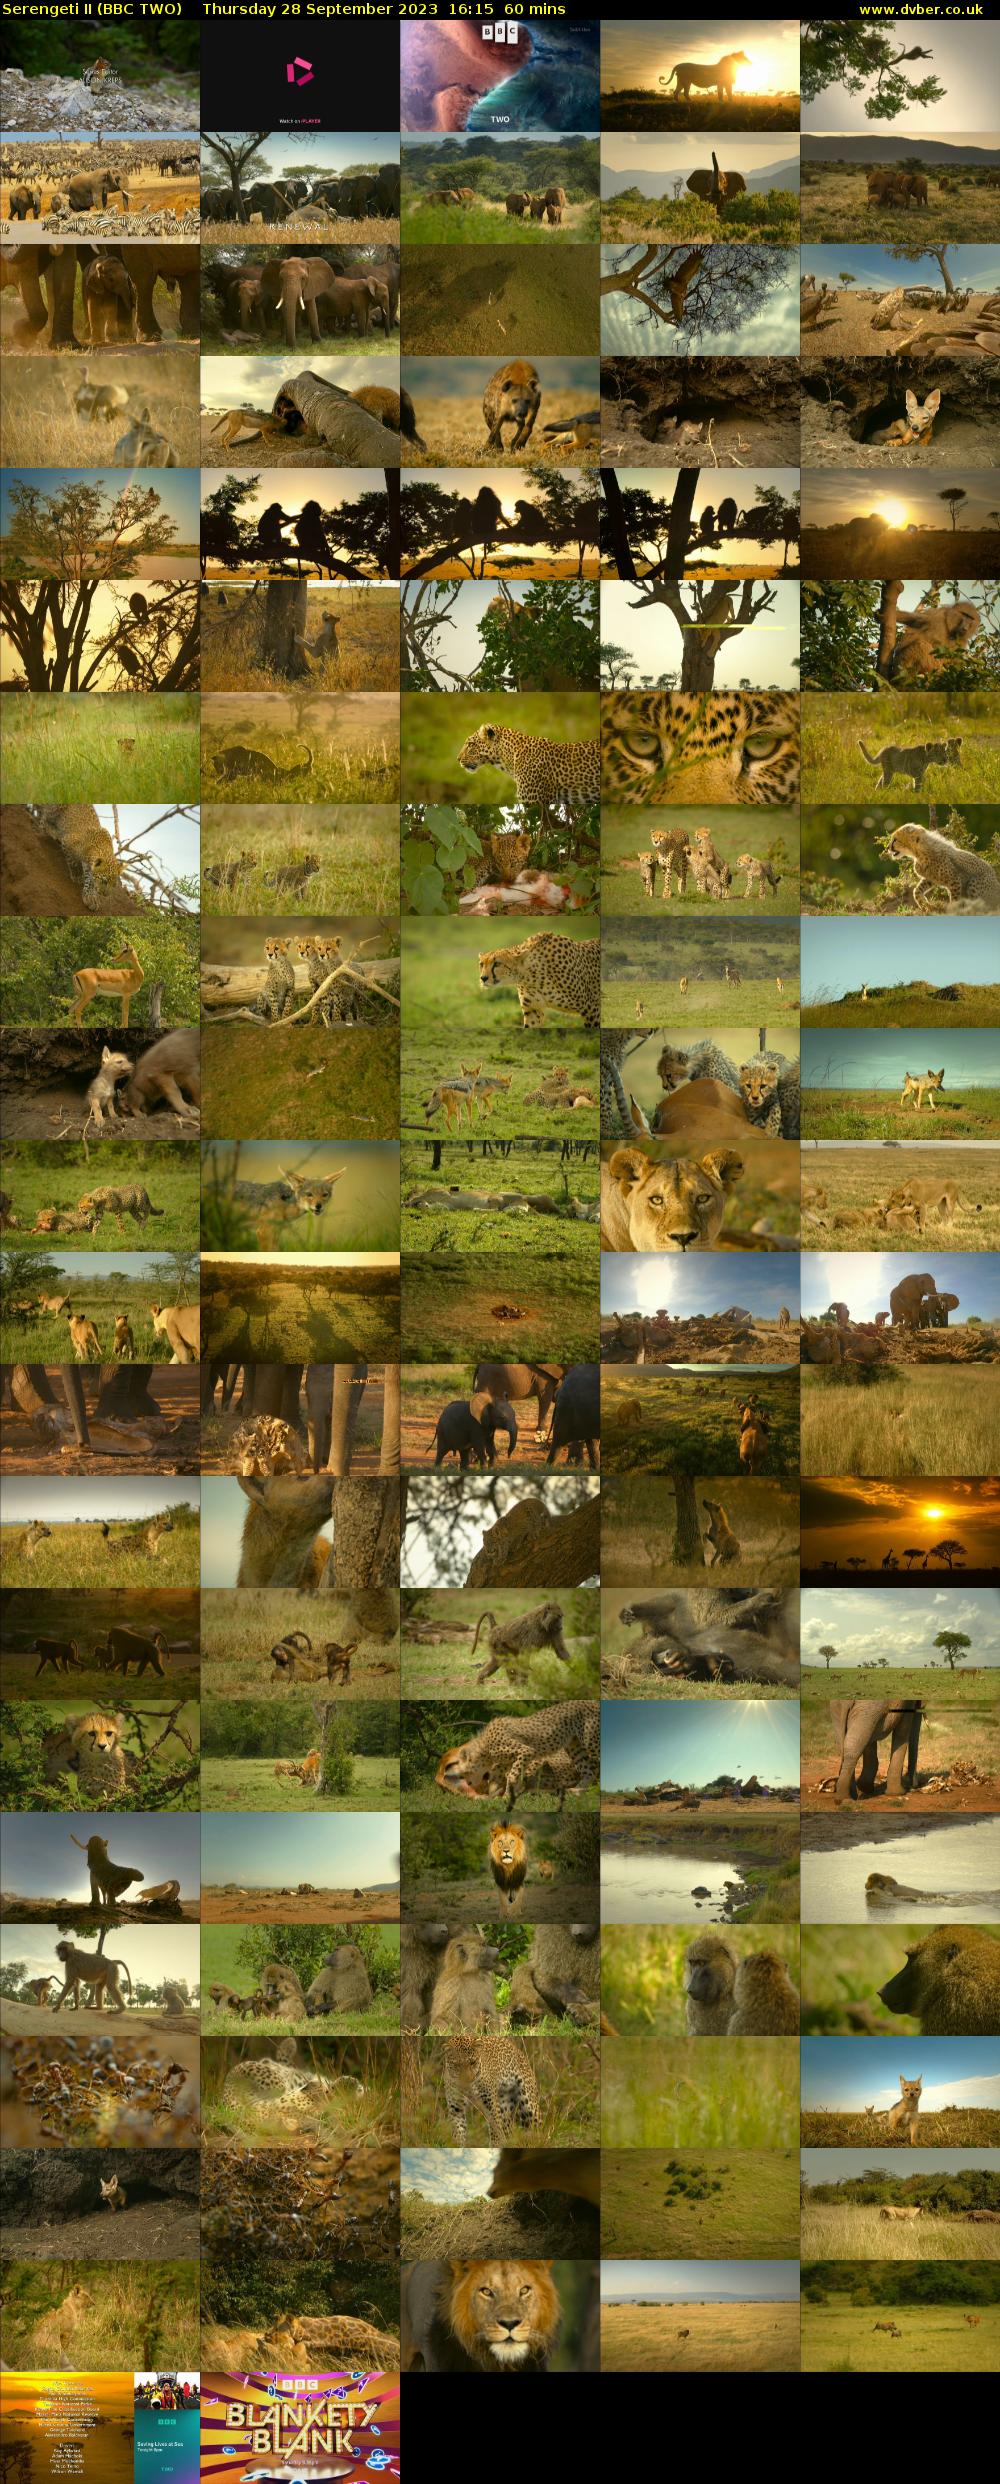 Serengeti II (BBC TWO) Thursday 28 September 2023 16:15 - 17:15